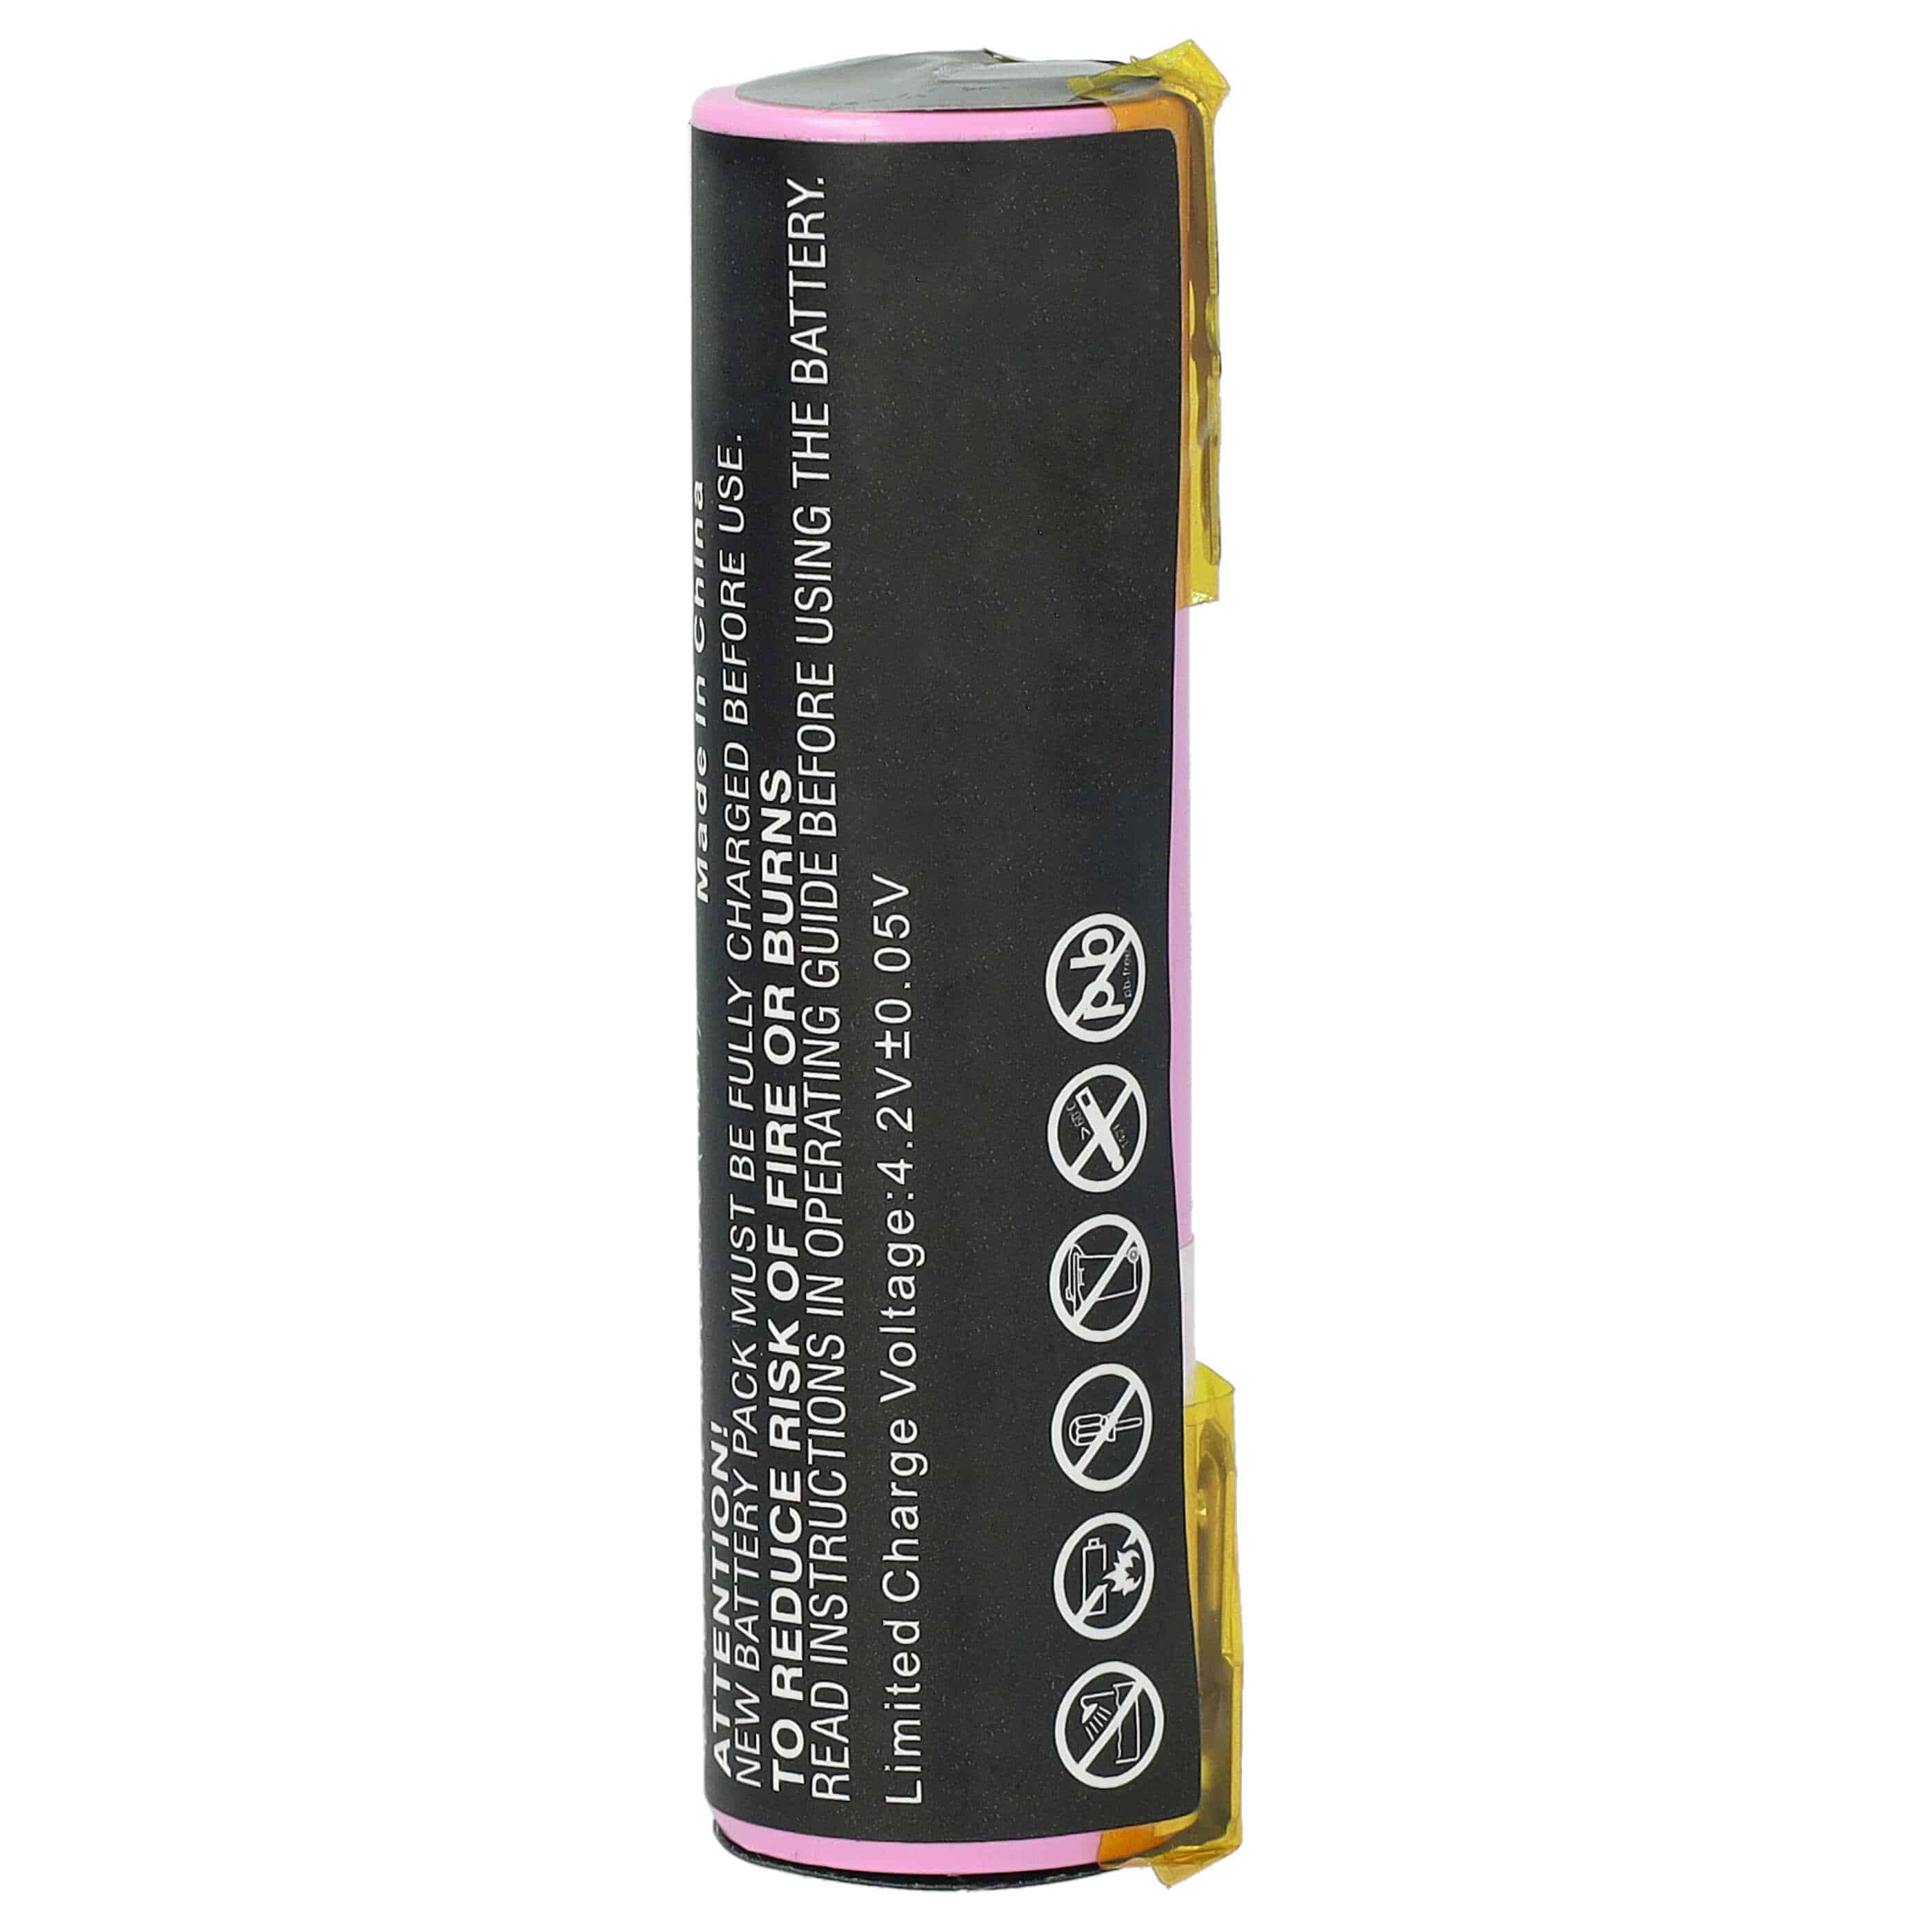 Batterie remplace Atika 08800-000.640.00, 08829-00.640.00 pour outil électrique - 2900 mAh, 3,7 V, Li-ion